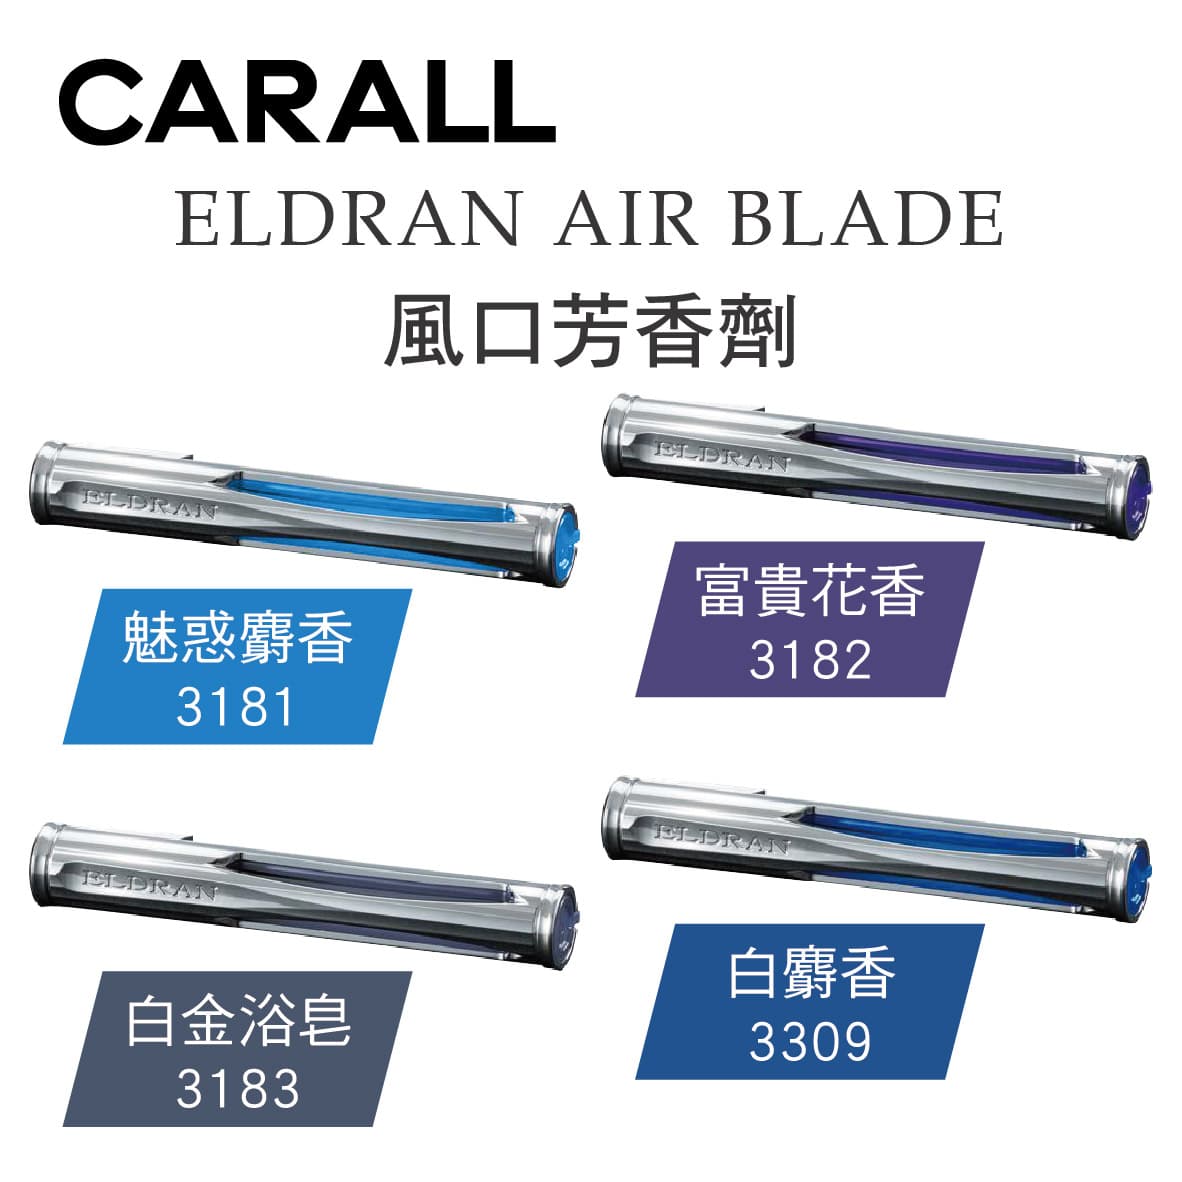 真便宜 CARALL ELDRAN AIR BLADE風口芳香劑